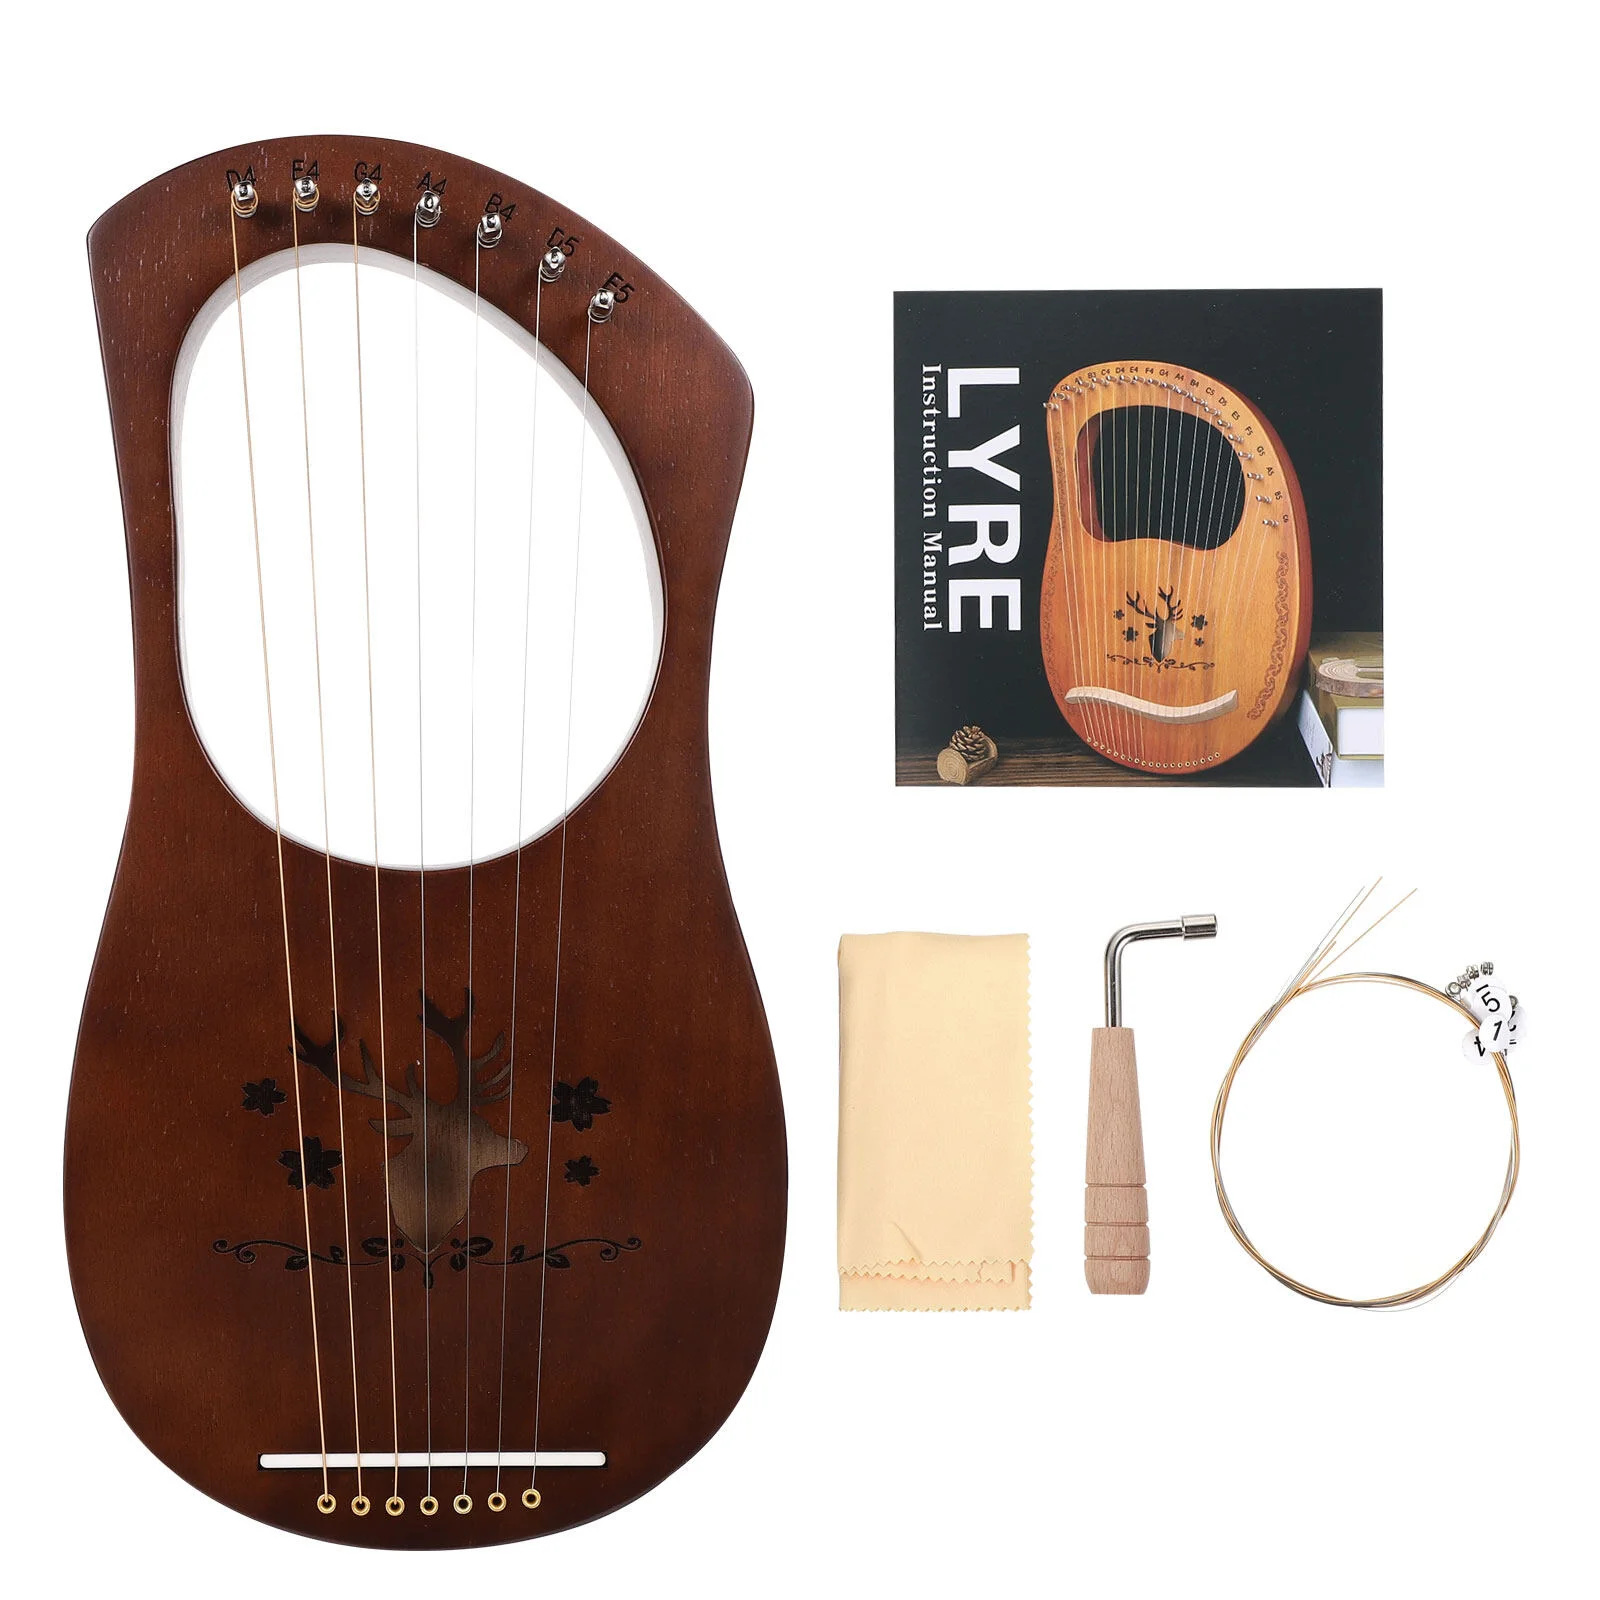 

1 Набор 7 металлических струн Lyre Harp деревянное седло музыкальный инструмент Lyre Harp с инструментом для настройки для начинающих любителей инструментов